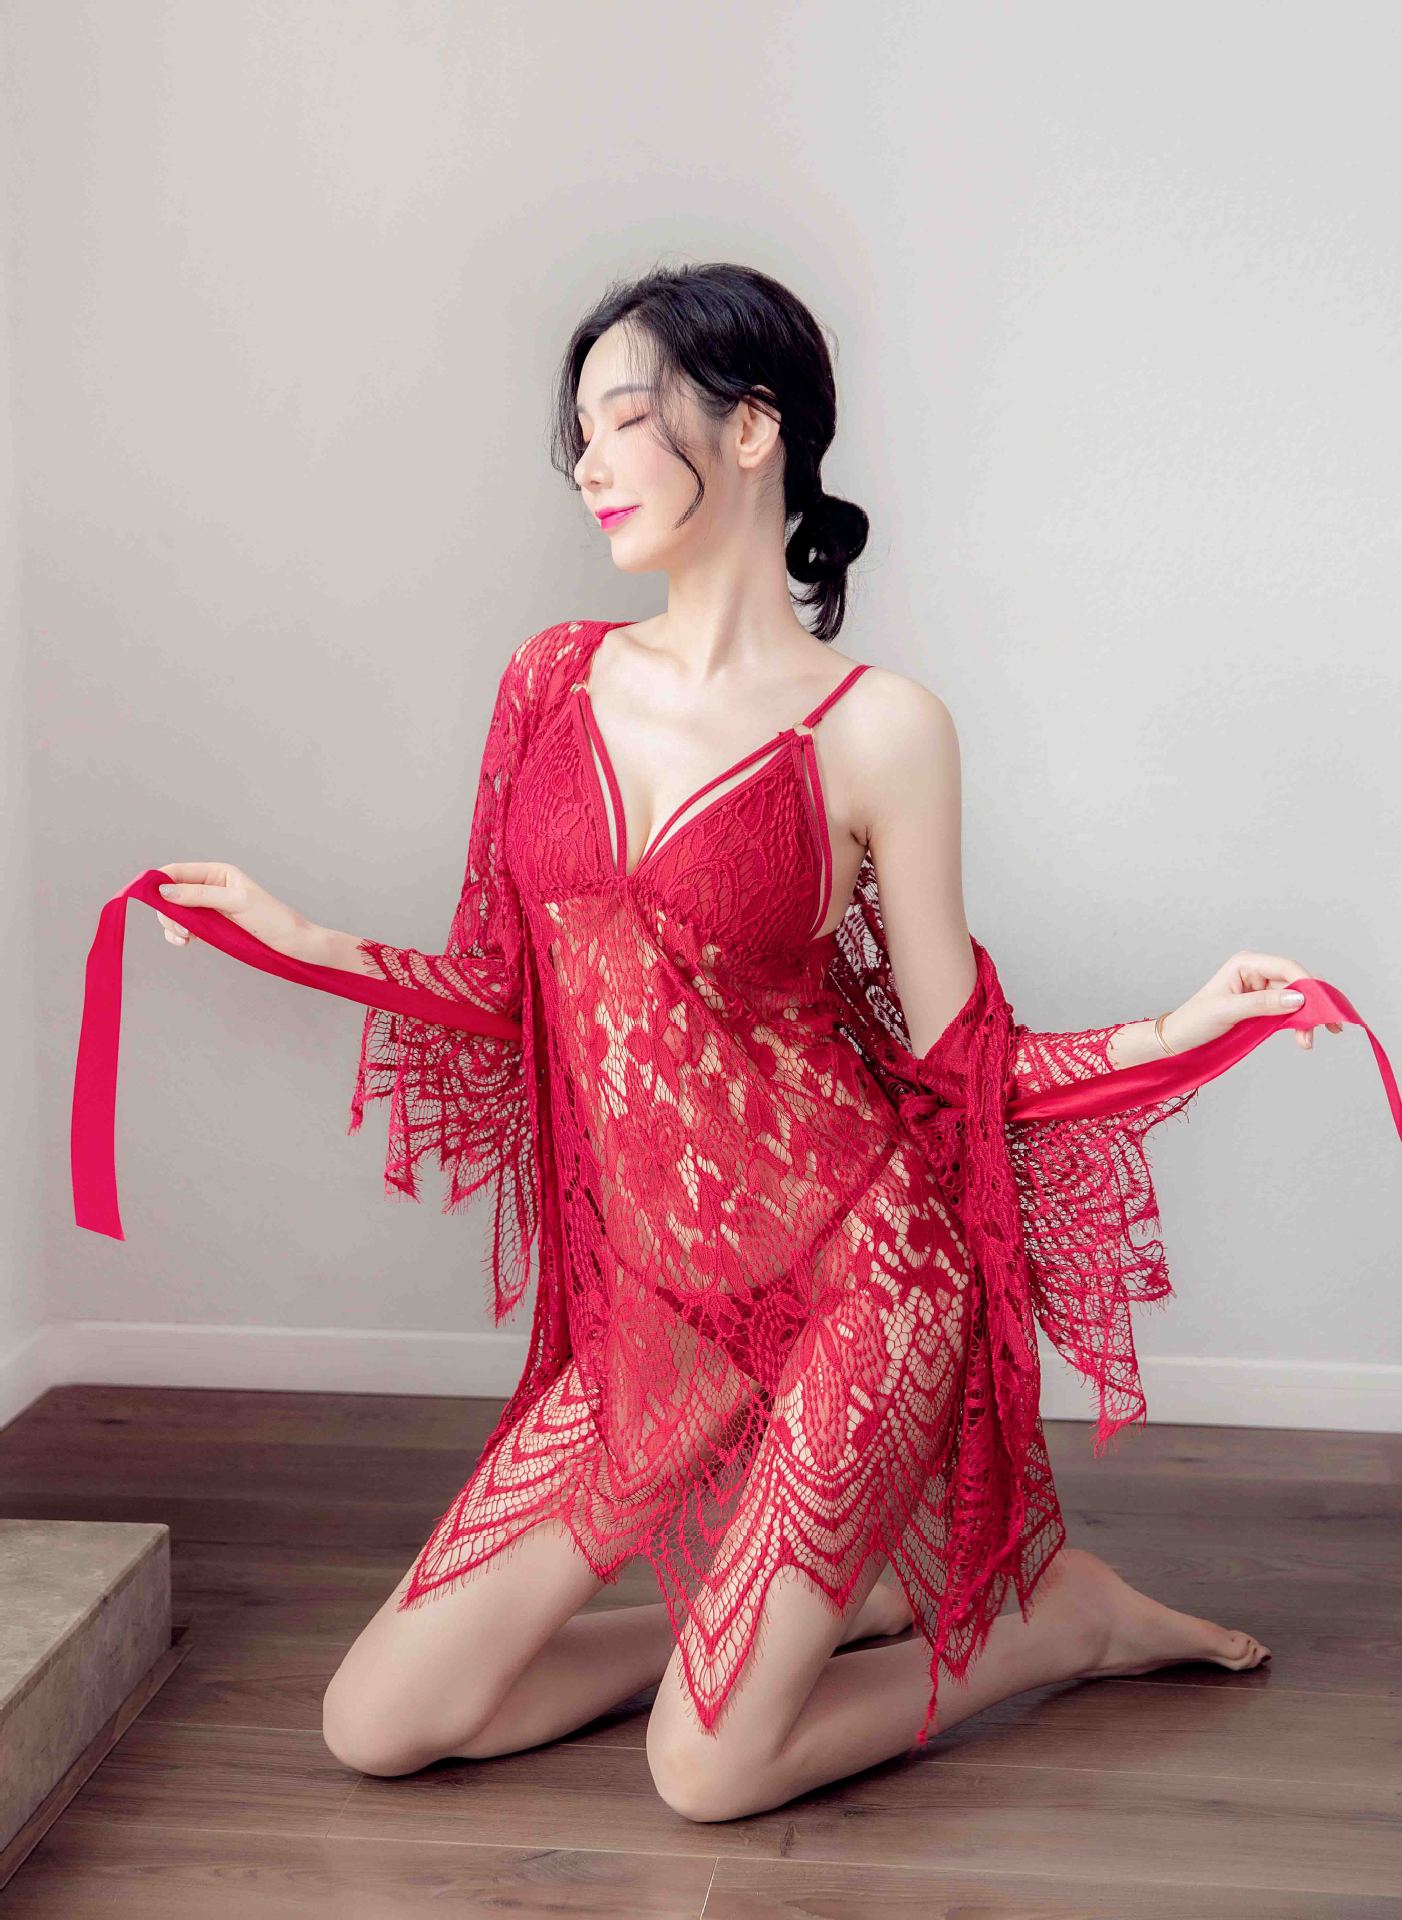 Áo choàng ngủ dài kèm váy 2 dây sexy đuôi cá màu đỏ đẹp mắt. Sản phẩm luôn có sẵn tại Hà Nội, giao hàng toàn quốc. Vui lòng gọi 09.6264.1133